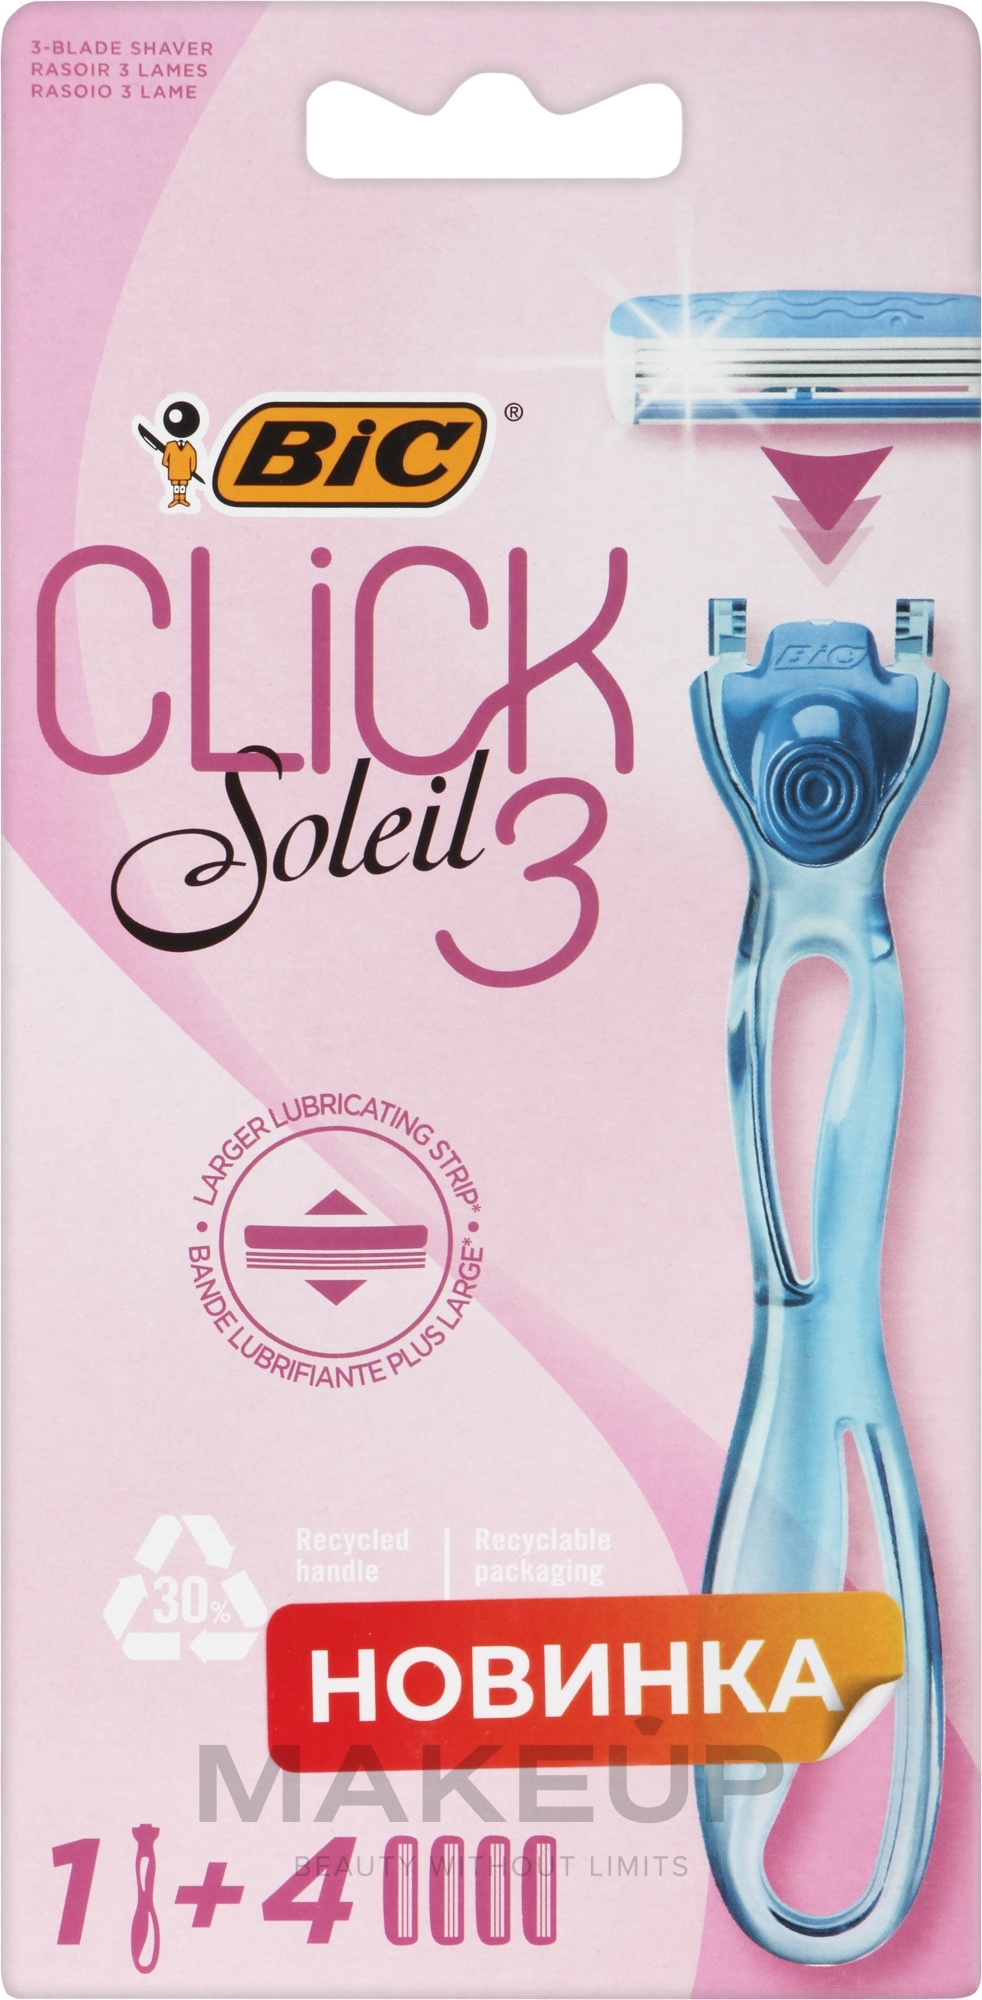 Maszynka do golenia z 4 wymiennymi wkładami - Bic Click 3 Soleil Sensitive — Zdjęcie 4 szt.